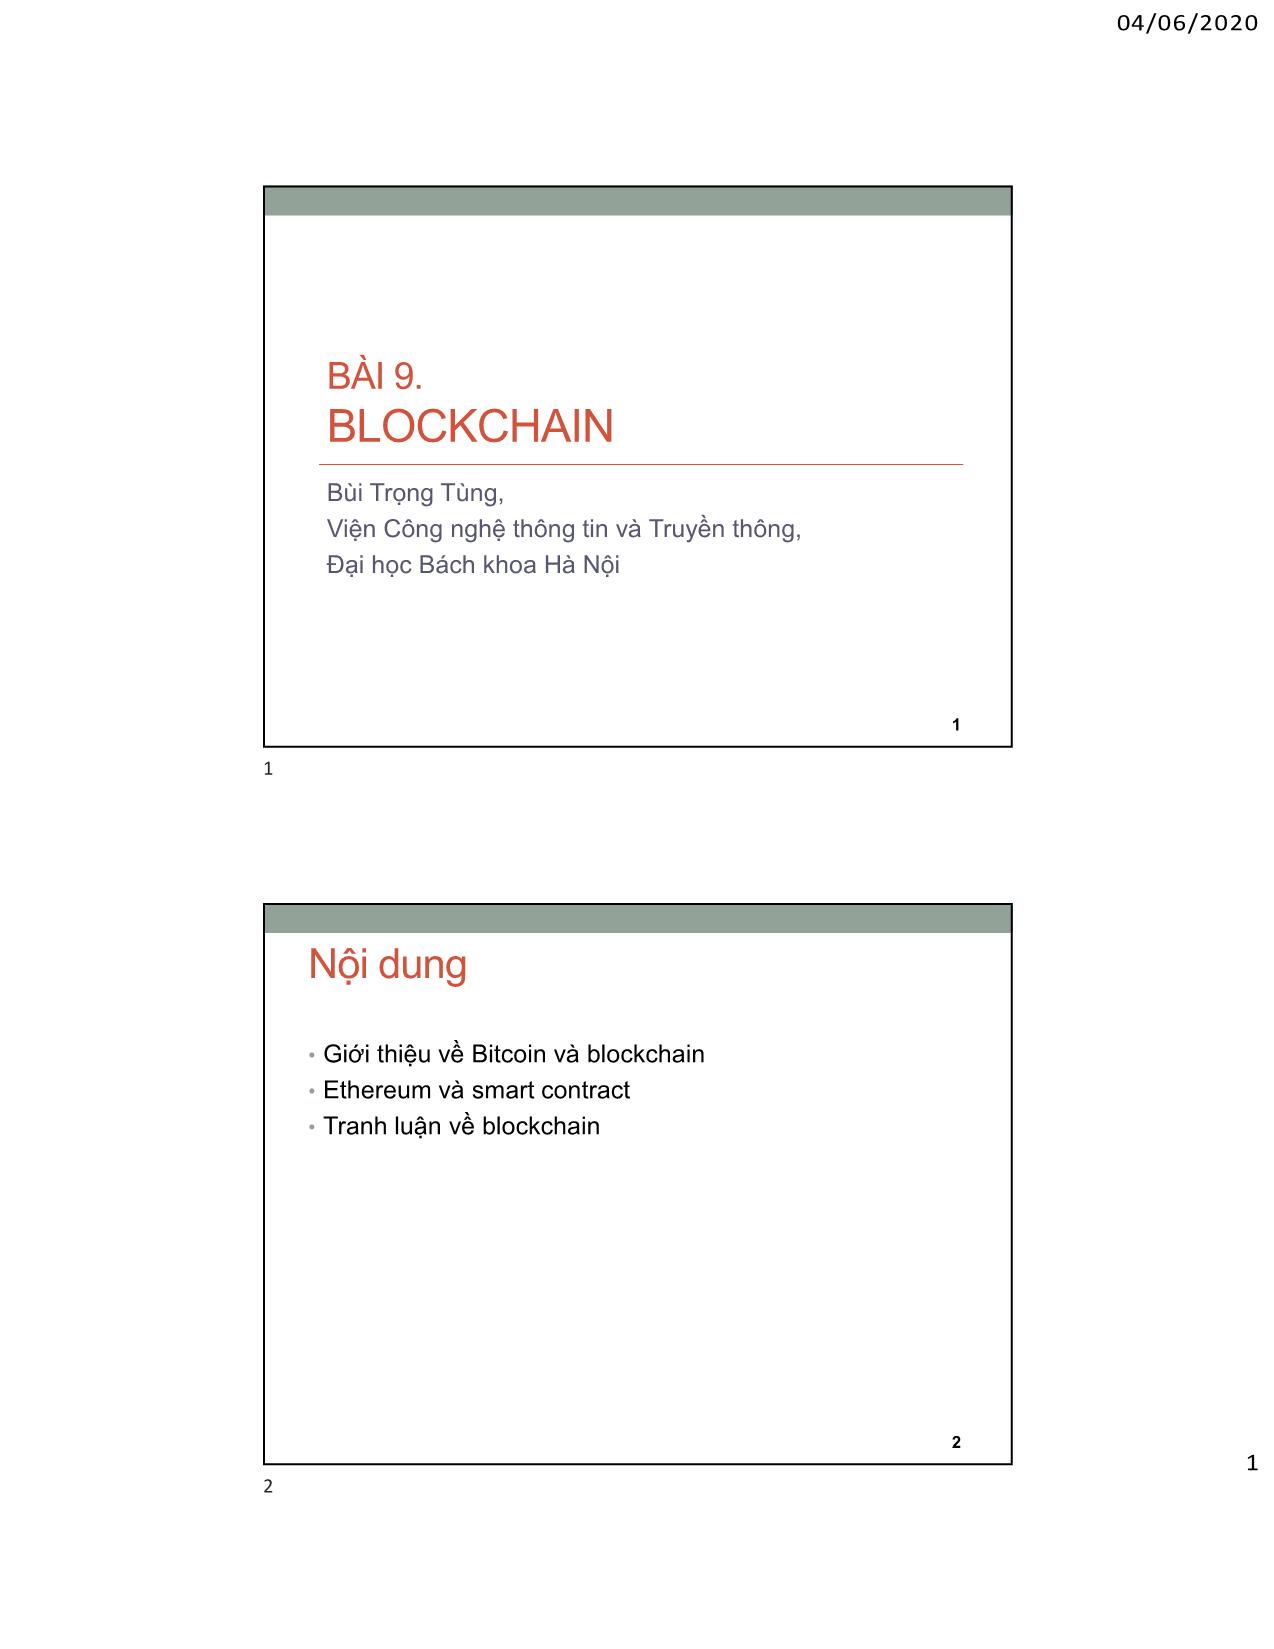 An ninh mạng máy tính - Bài 9: Blockchain trang 1